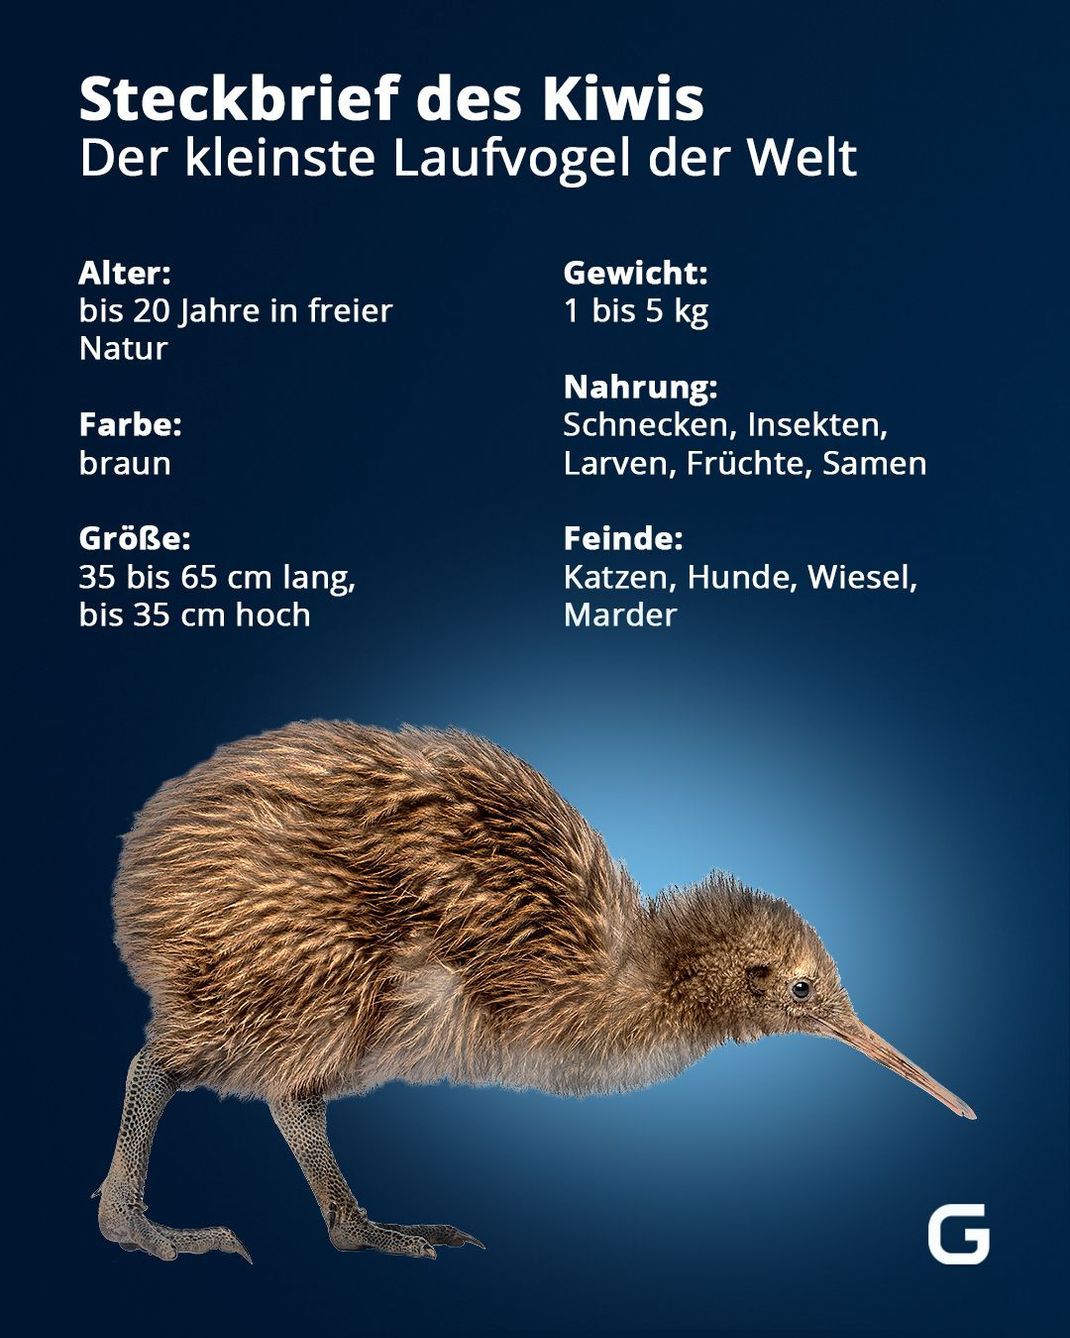 Eckdaten zum Kiwi, dem kleinsten Laufvogel der Welt